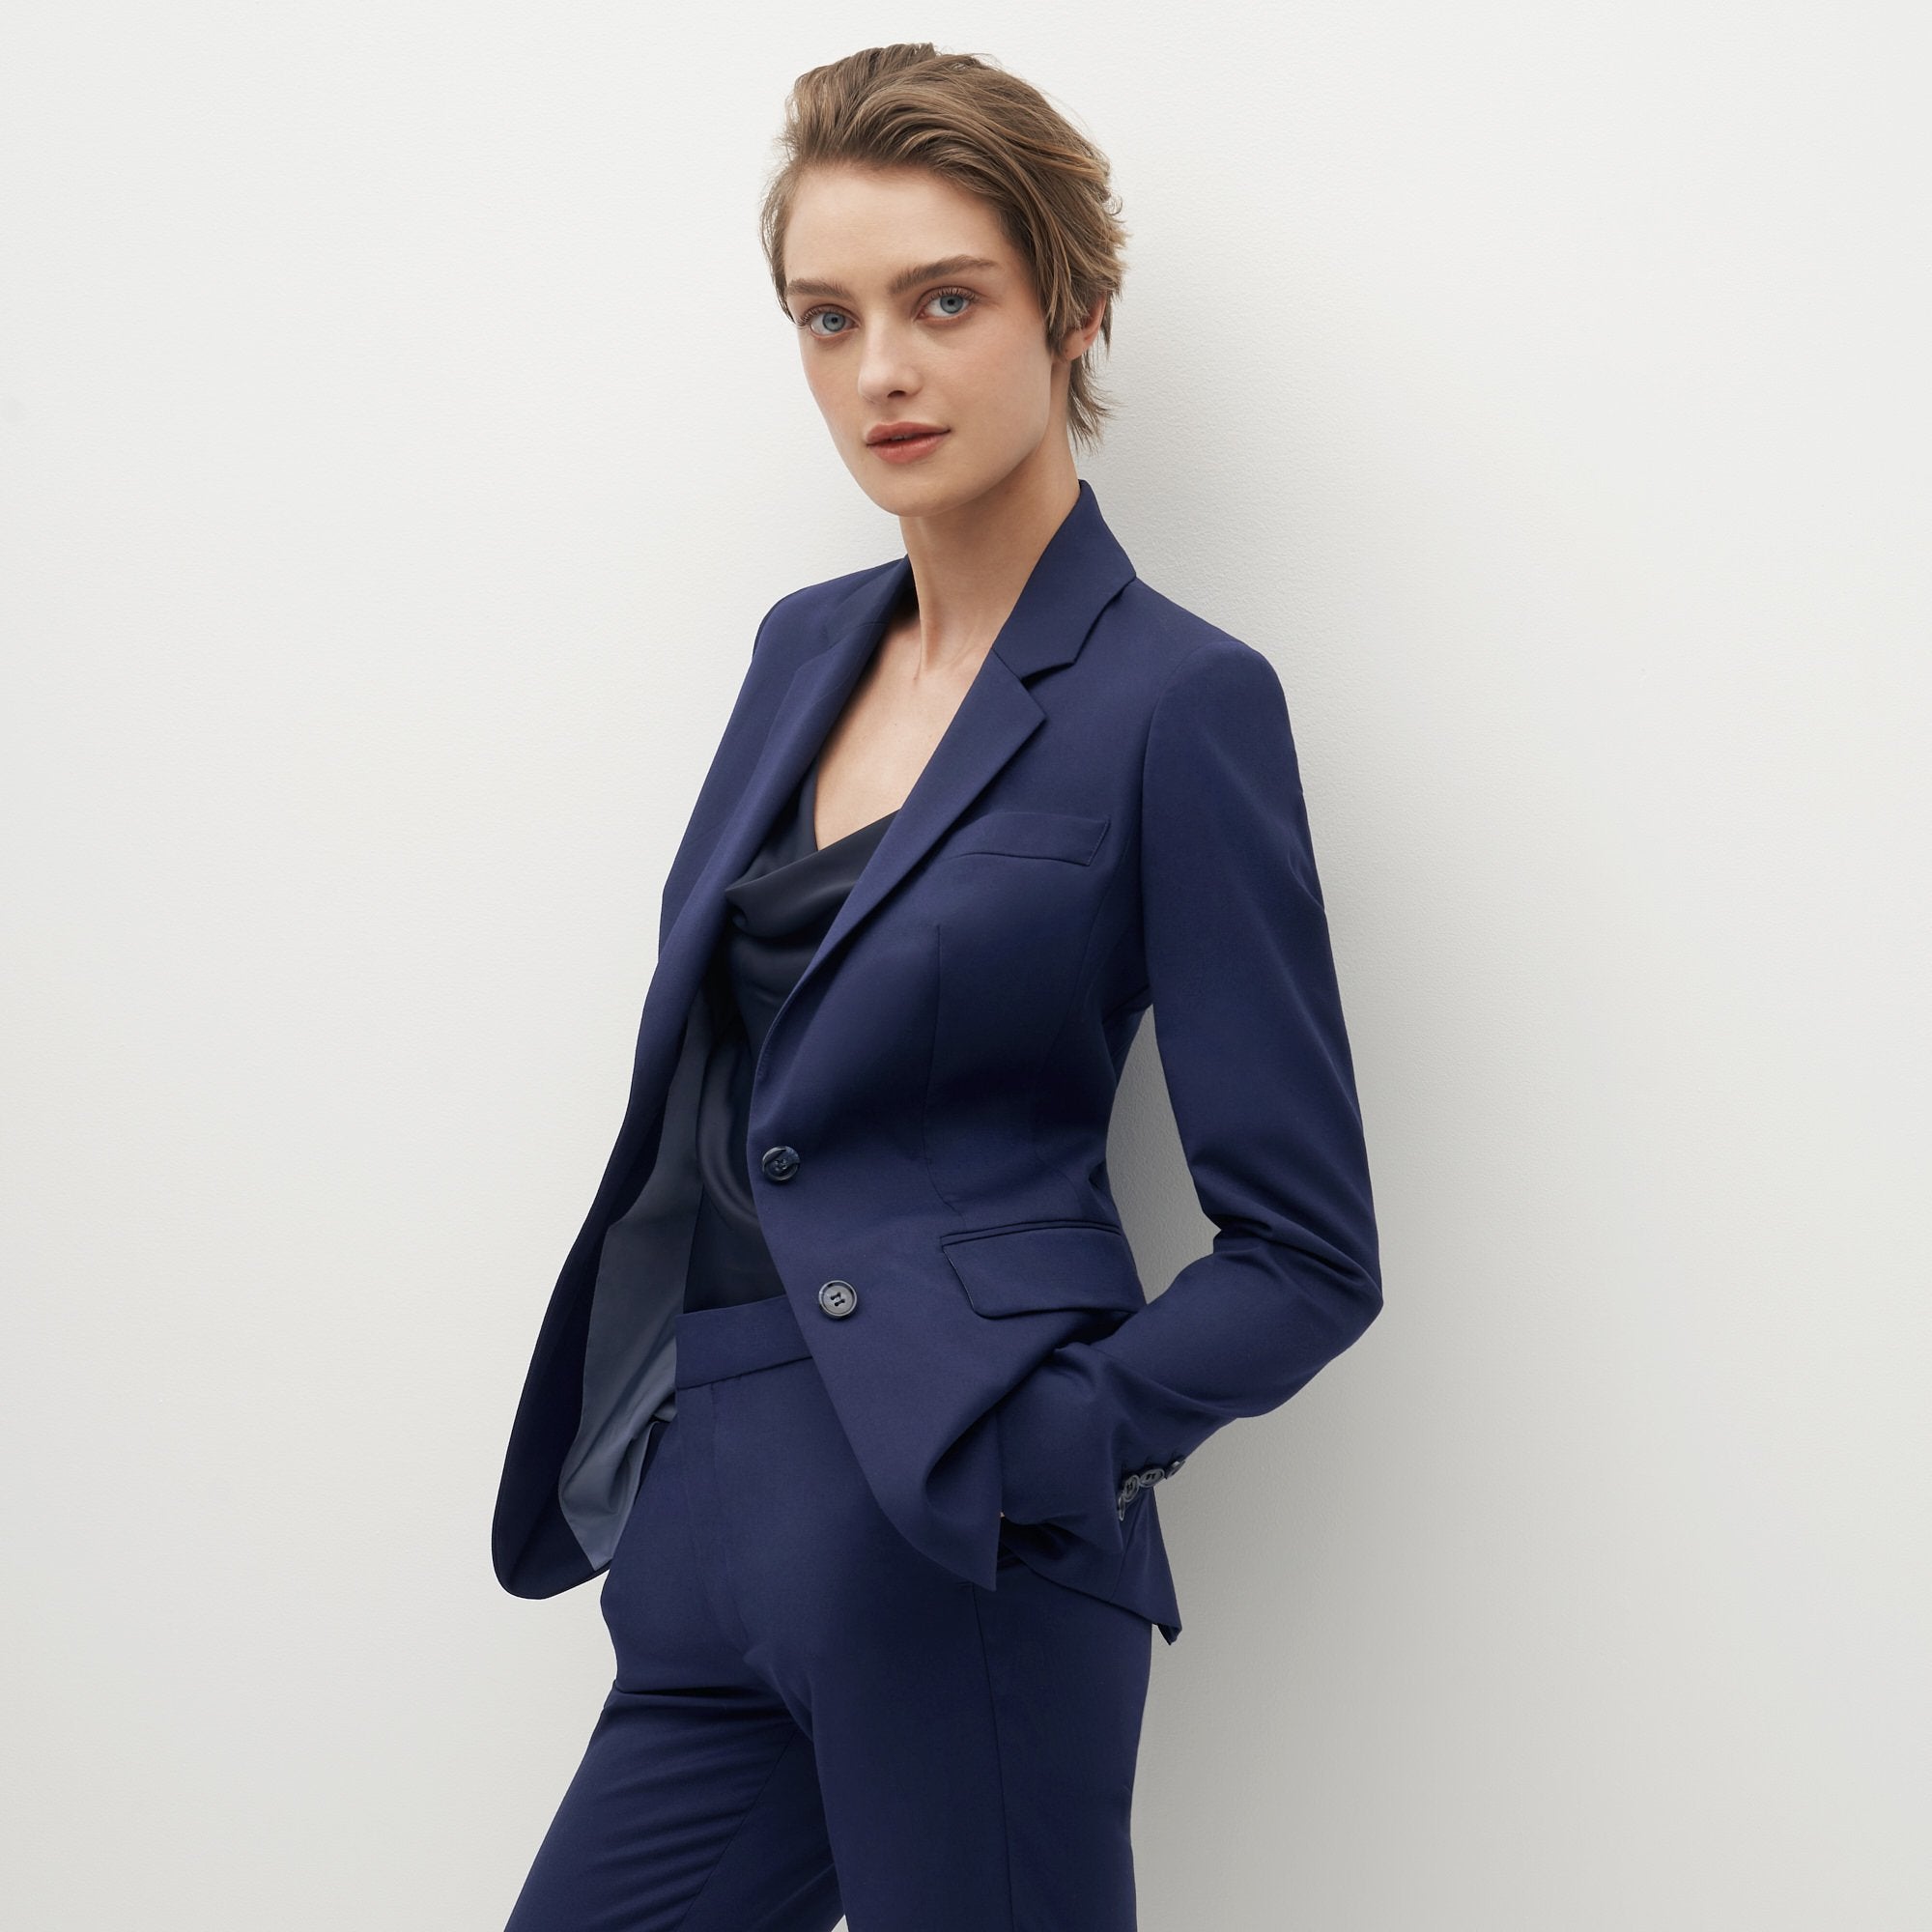 Women's Royal Blue Suit | SuitShop